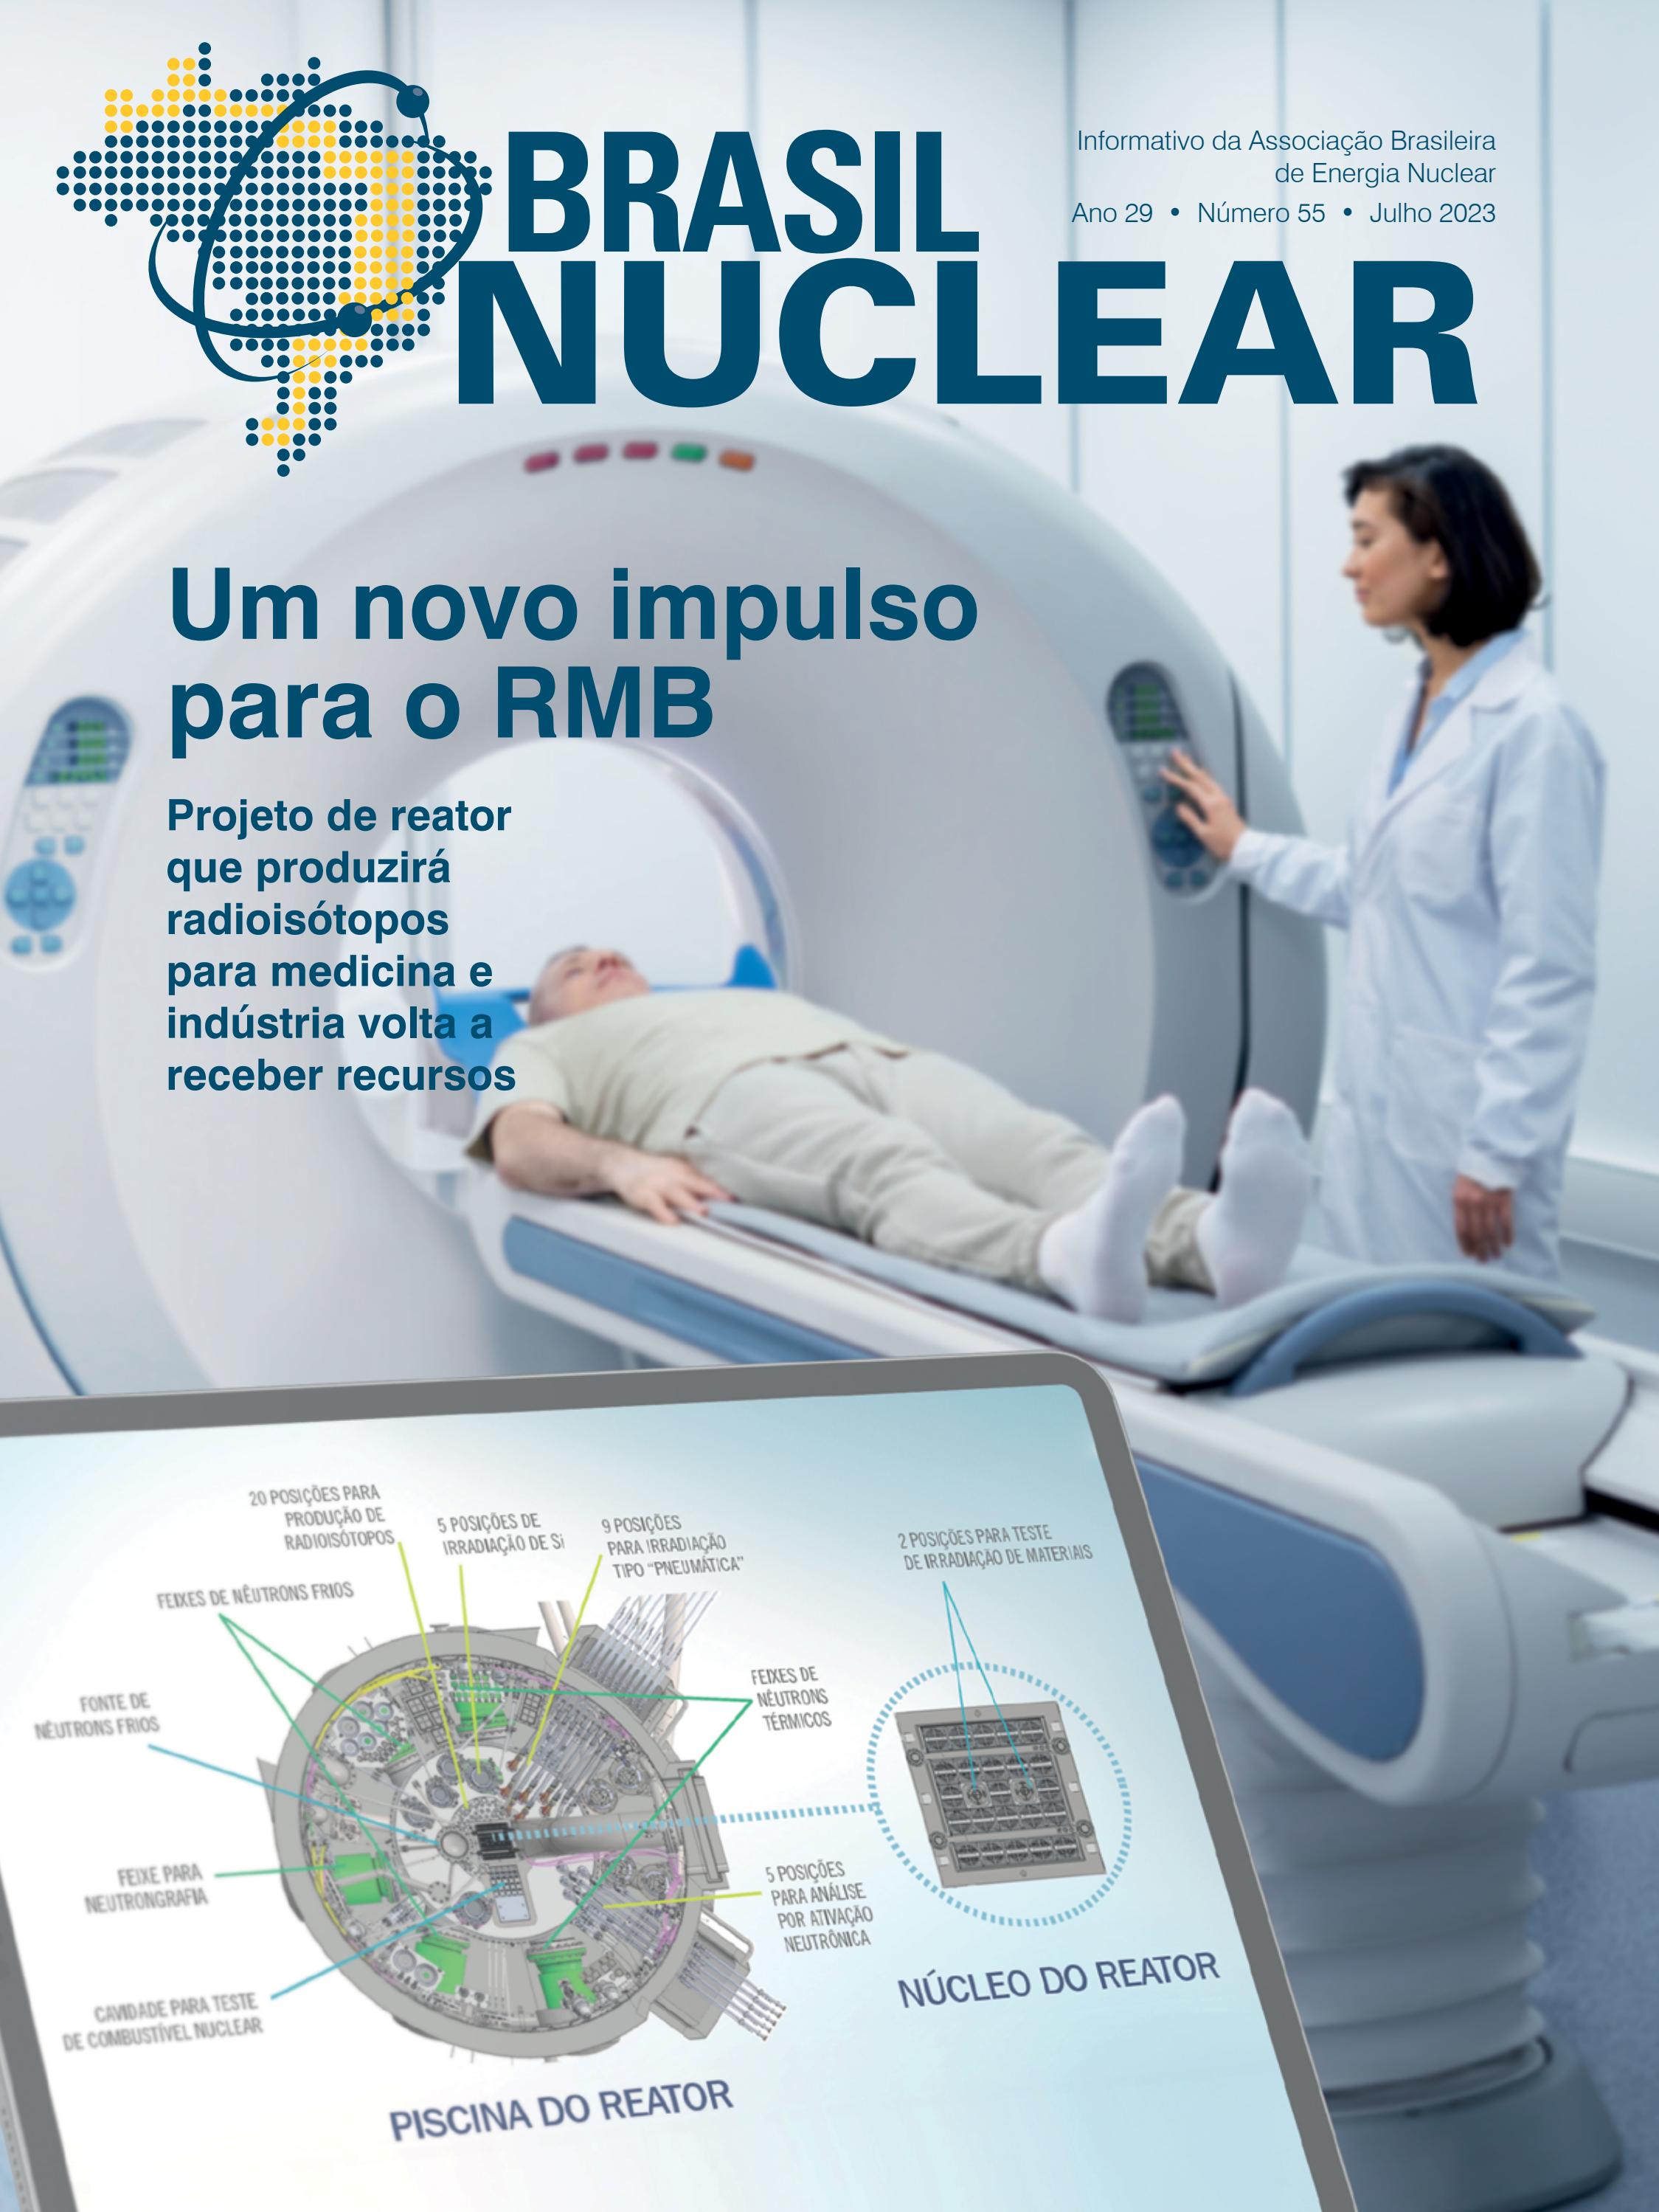 Brasil deve ter repositório definitivo para rejeito nuclear até 2029